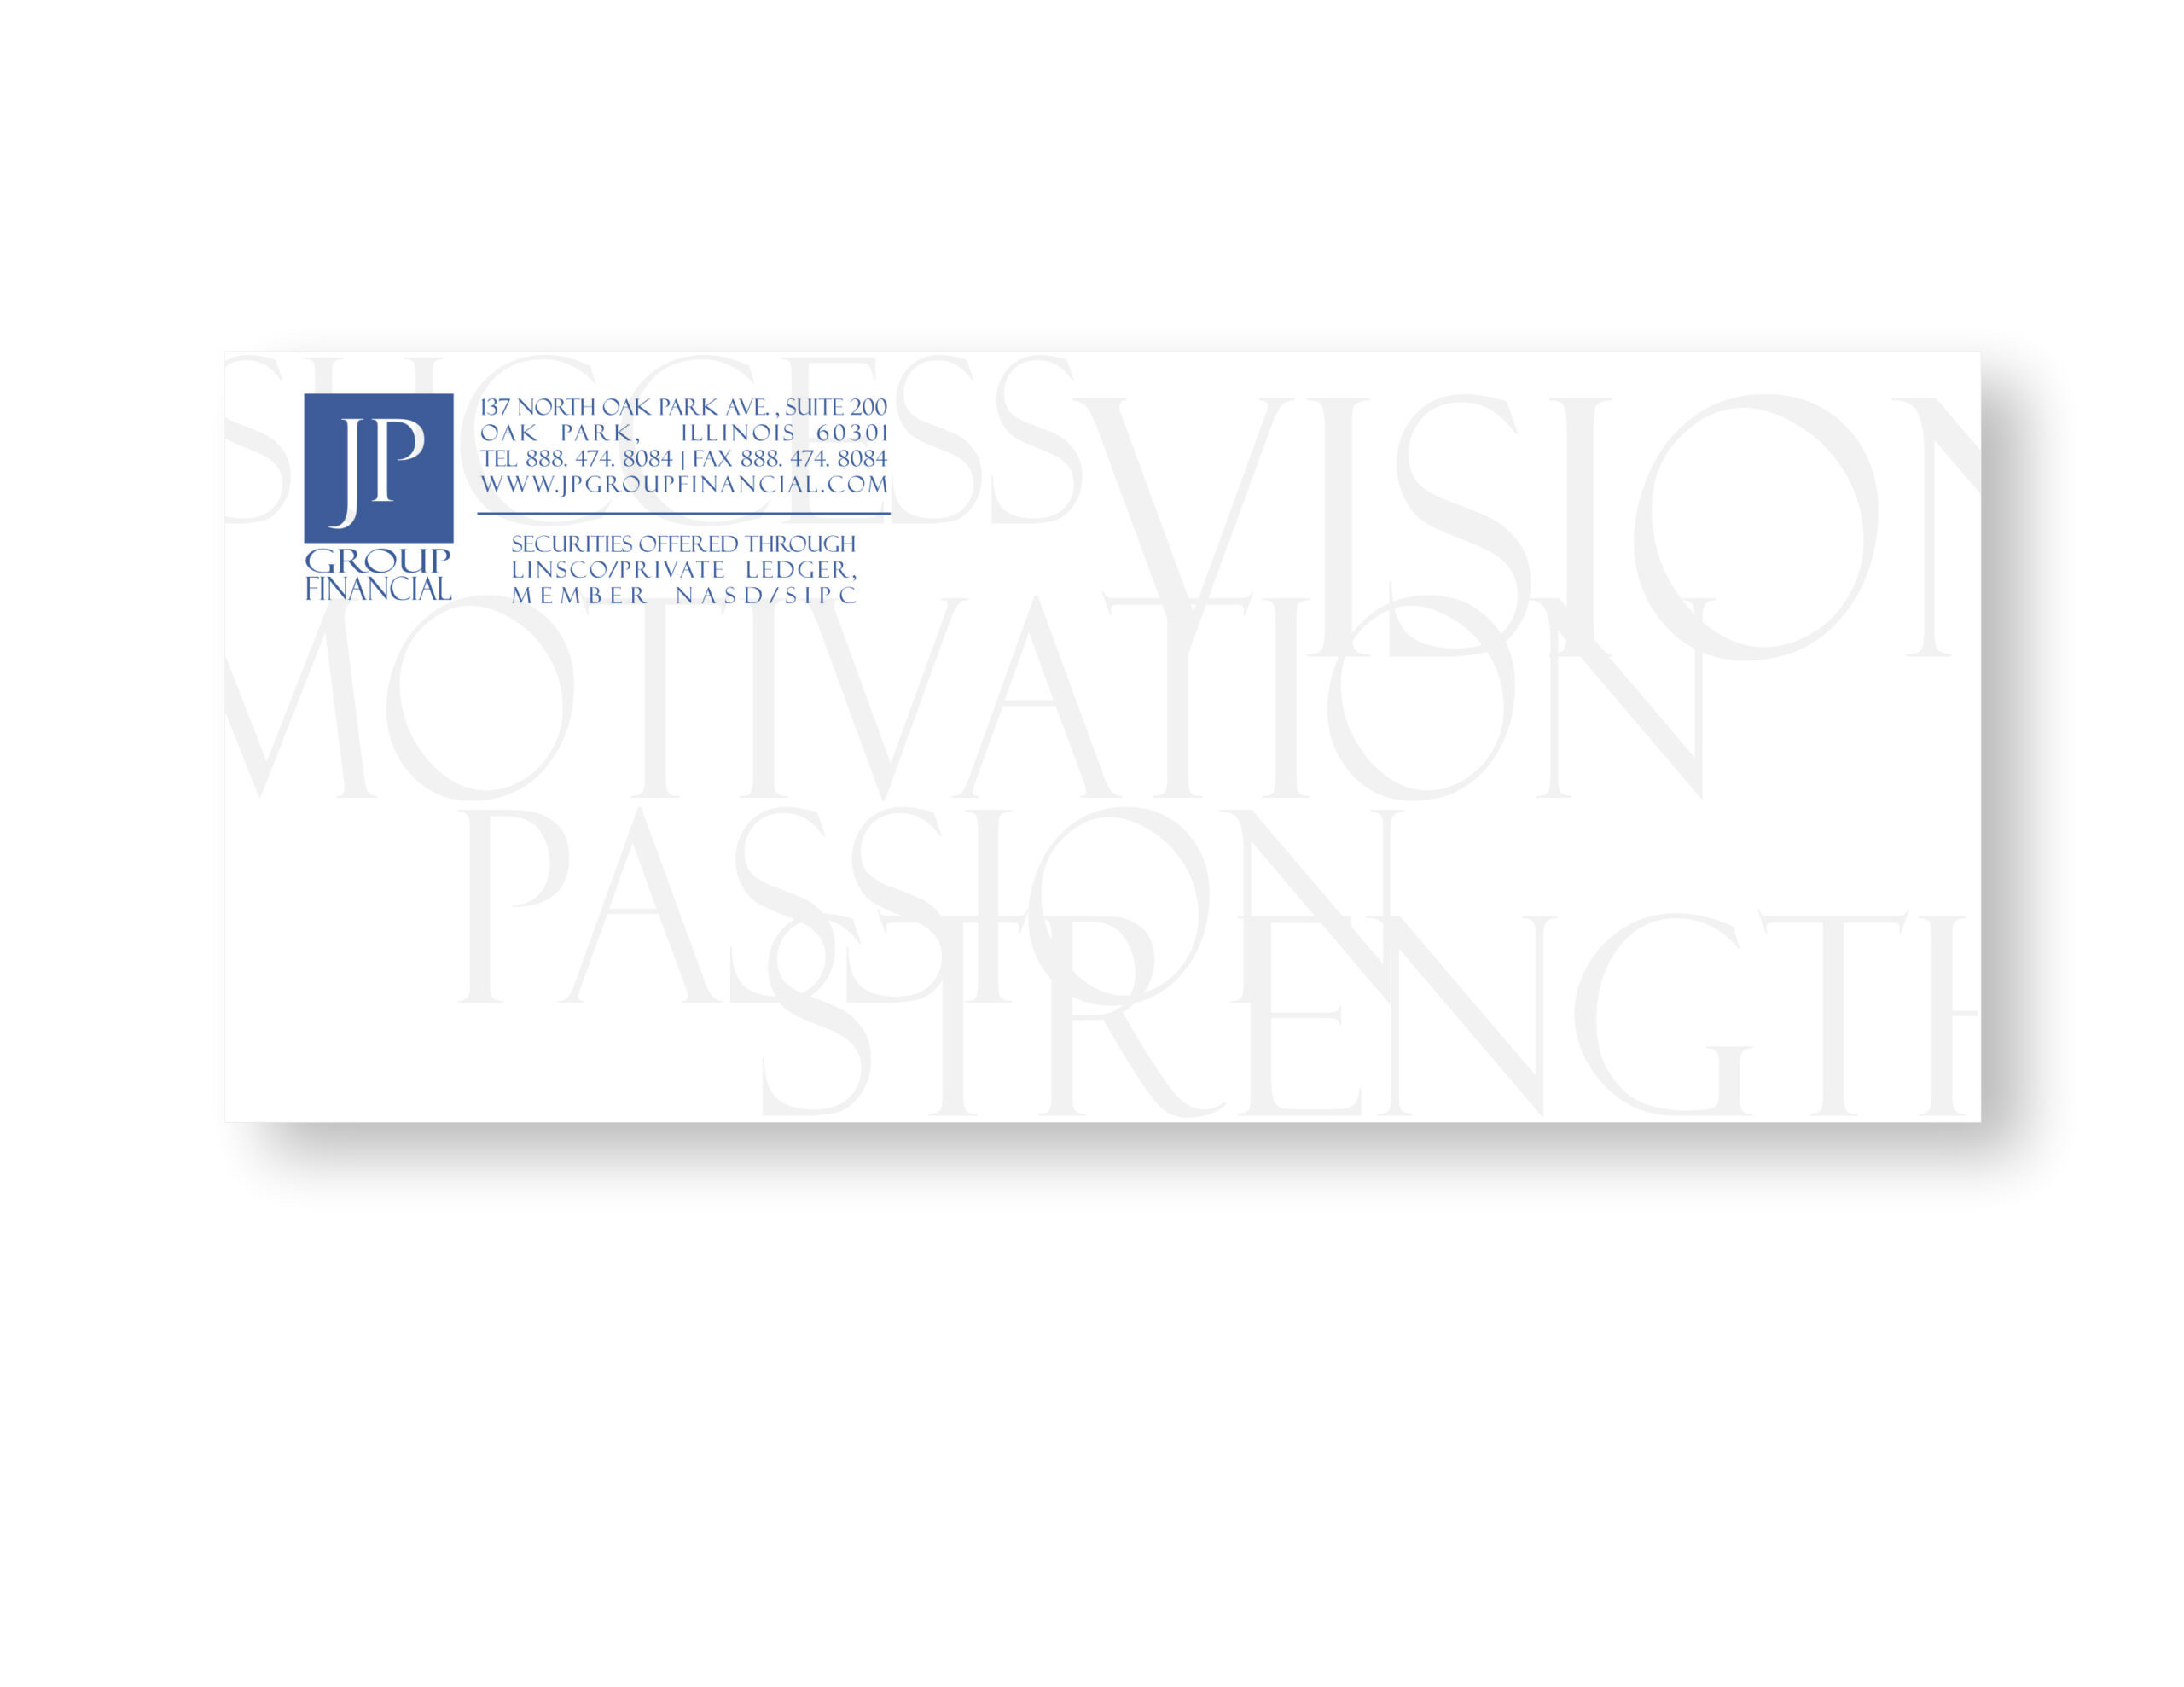 JP Group F envelope